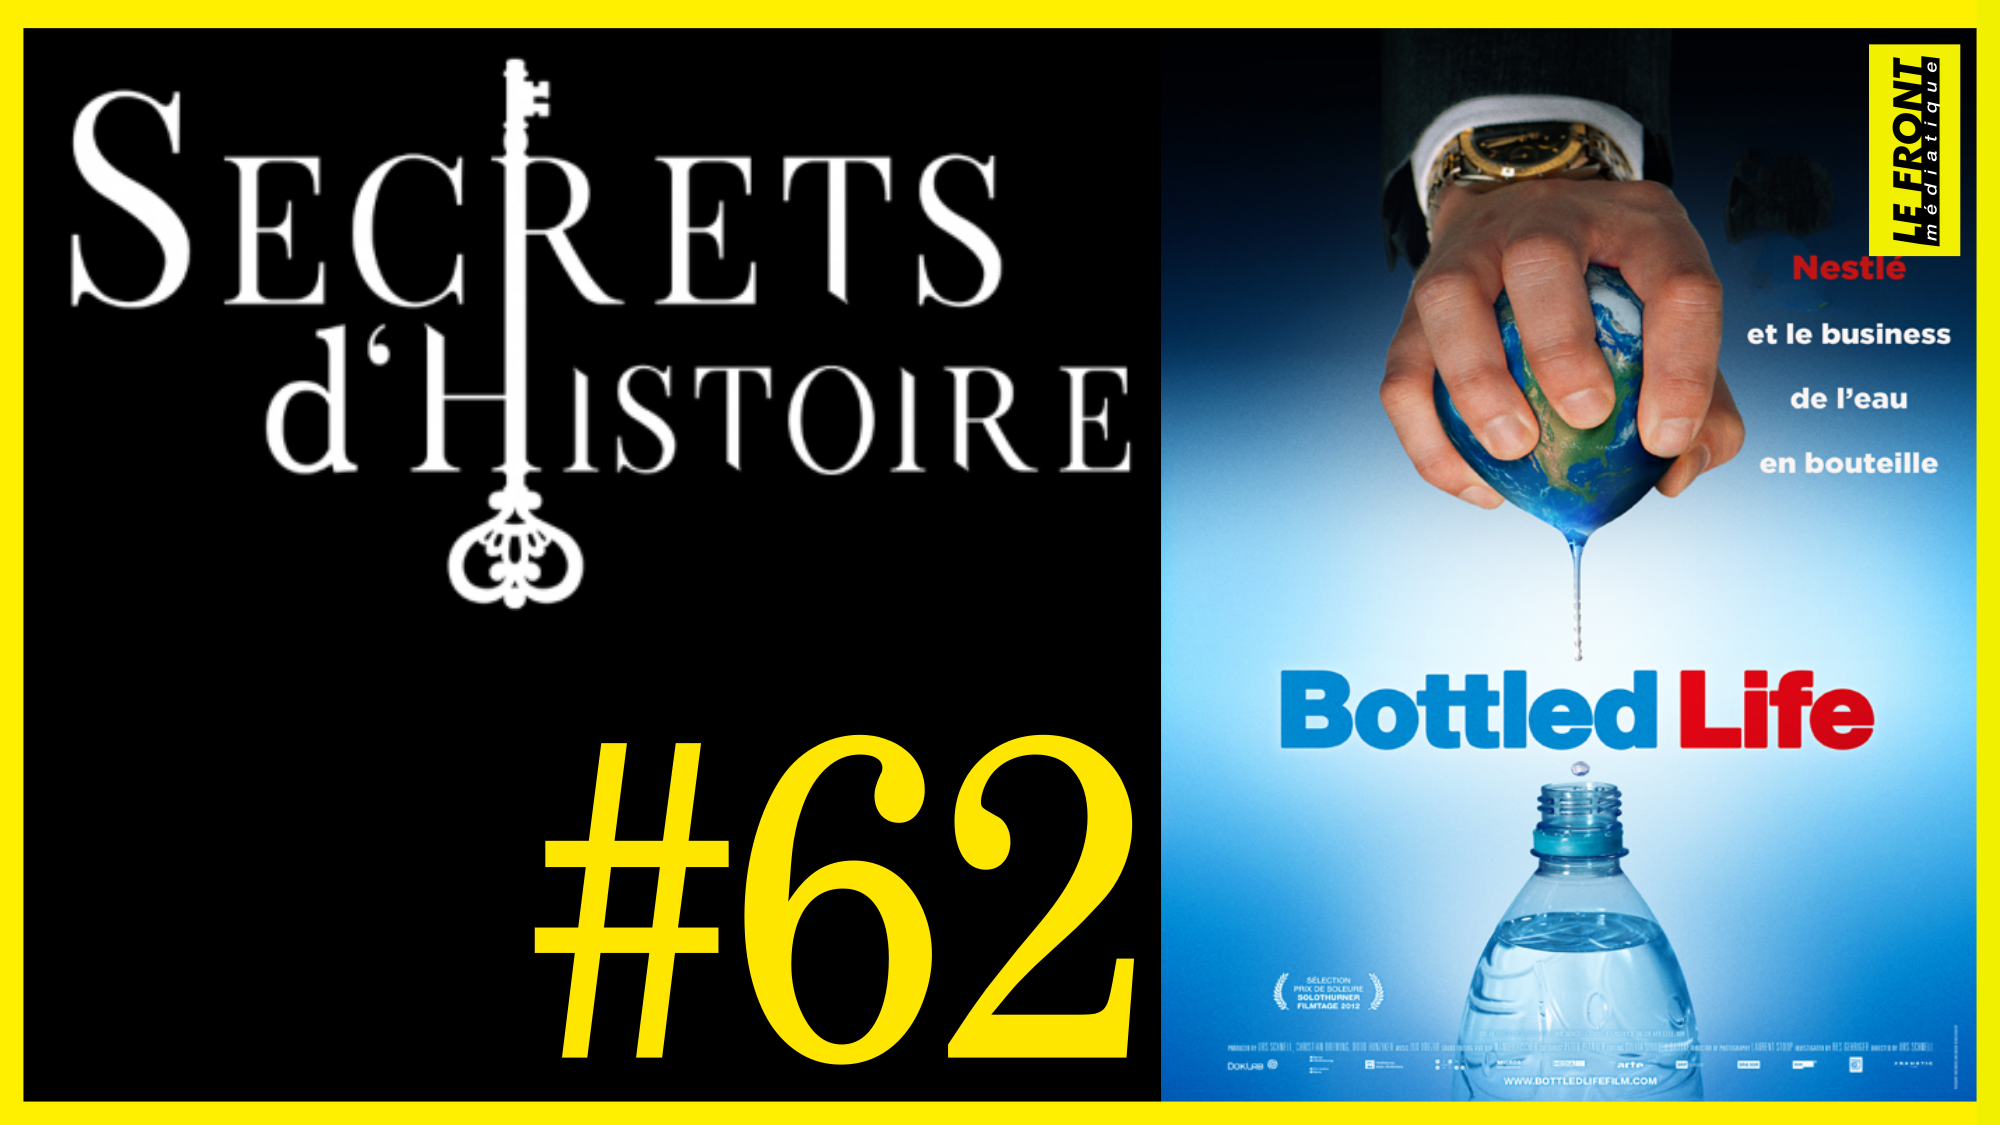 🗝 DOCU INCONTOURNABLE #62 🎥 Nestlé et le business de l’eau en bouteille 📆 2014 ⏱ 1h30min